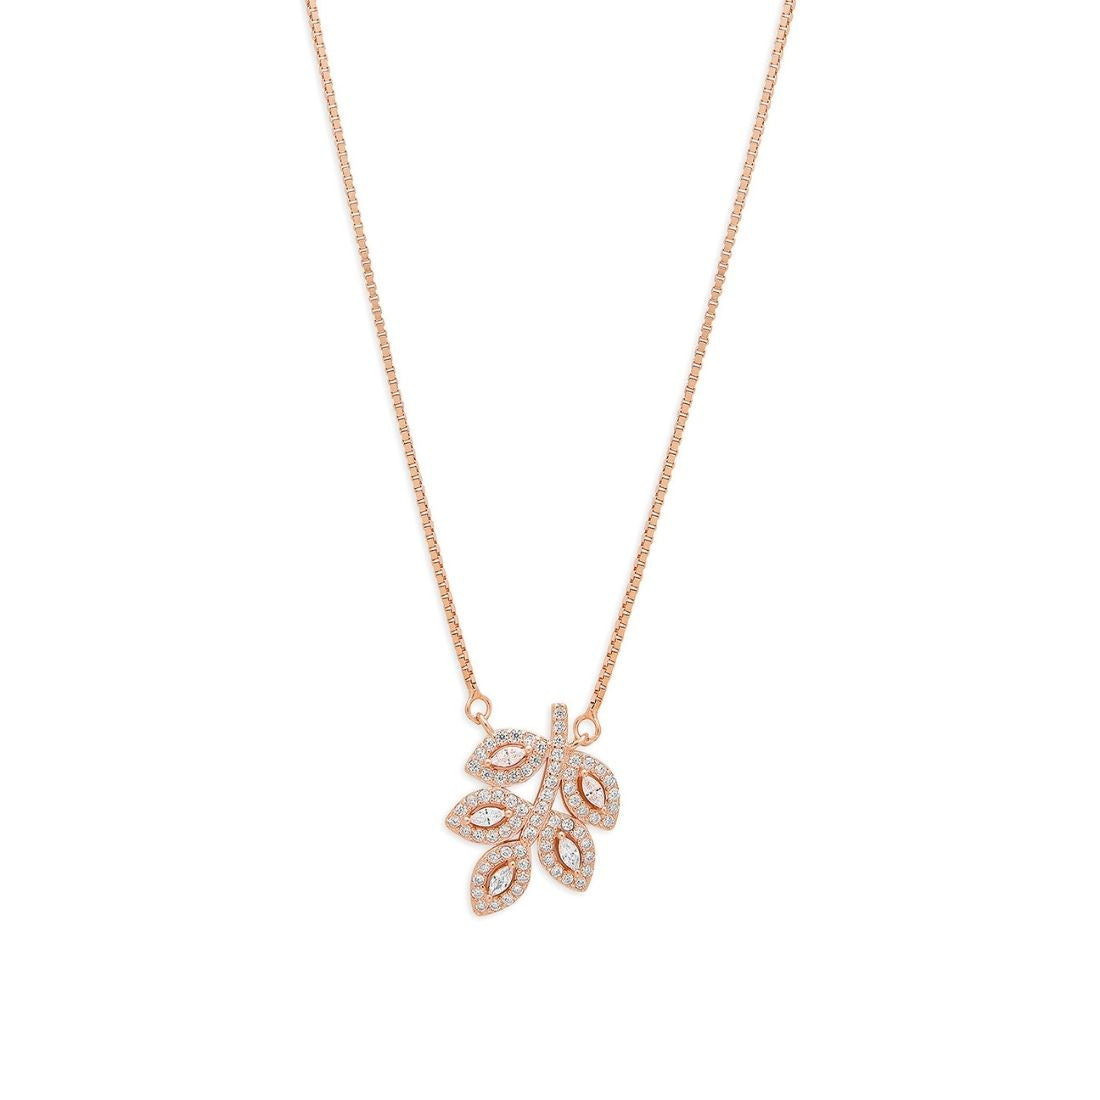 Ethereal Elegance 925 Sterling Silver Rose Gold-Plated Leaf Necklace